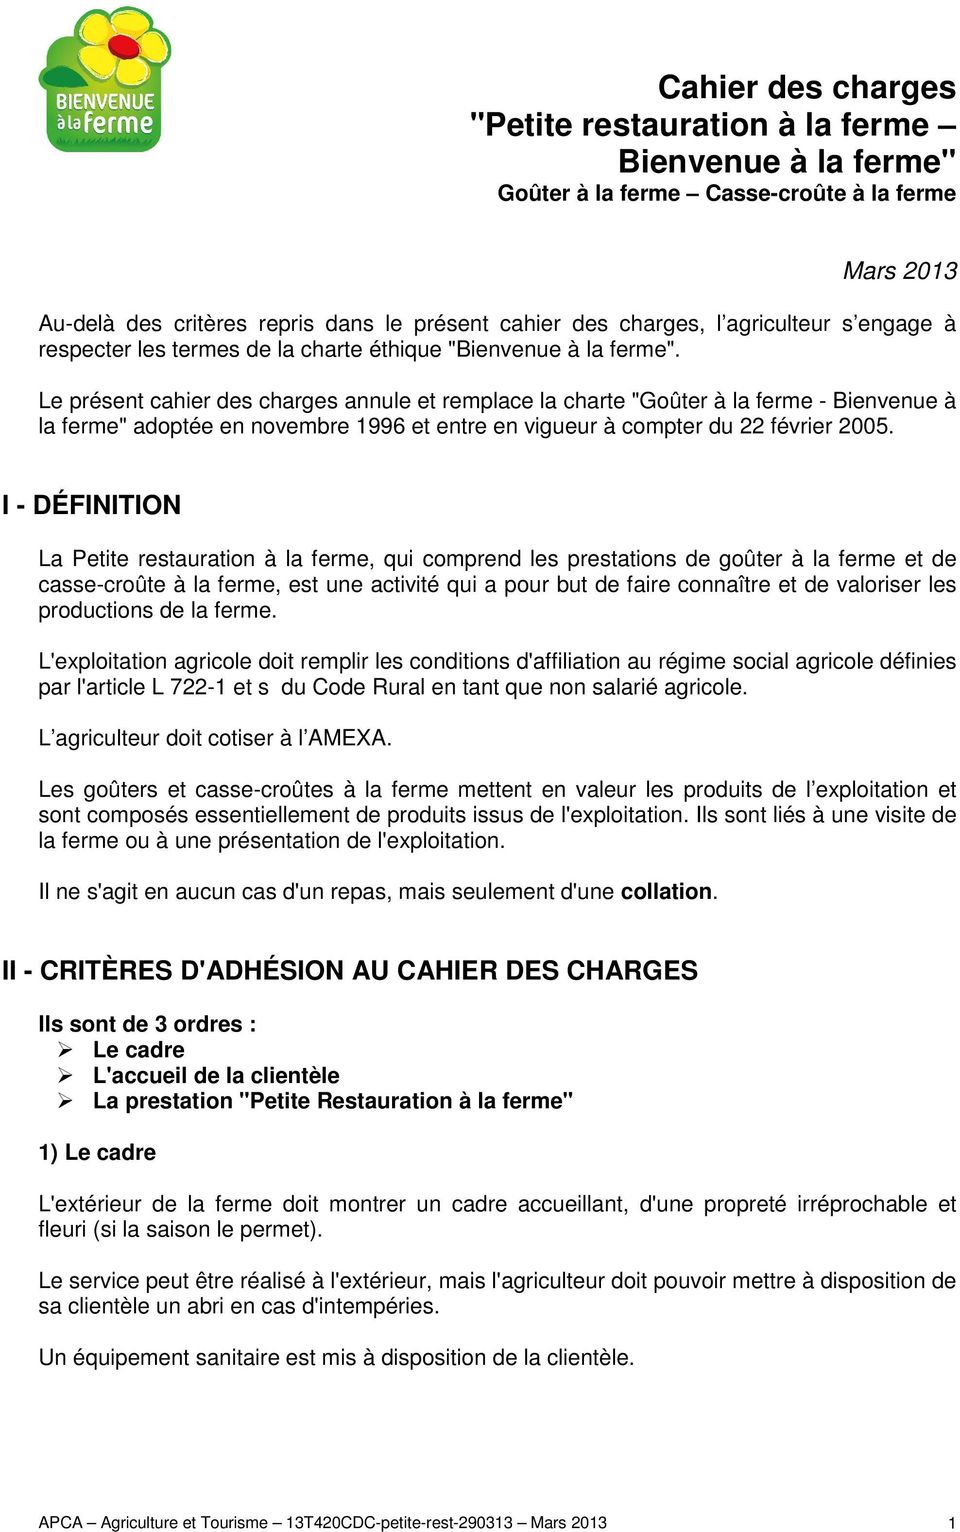 Le présent cahier des charges annule et remplace la charte "Goûter à la ferme - Bienvenue à la ferme" adoptée en novembre 1996 et entre en vigueur à compter du 22 février 2005.